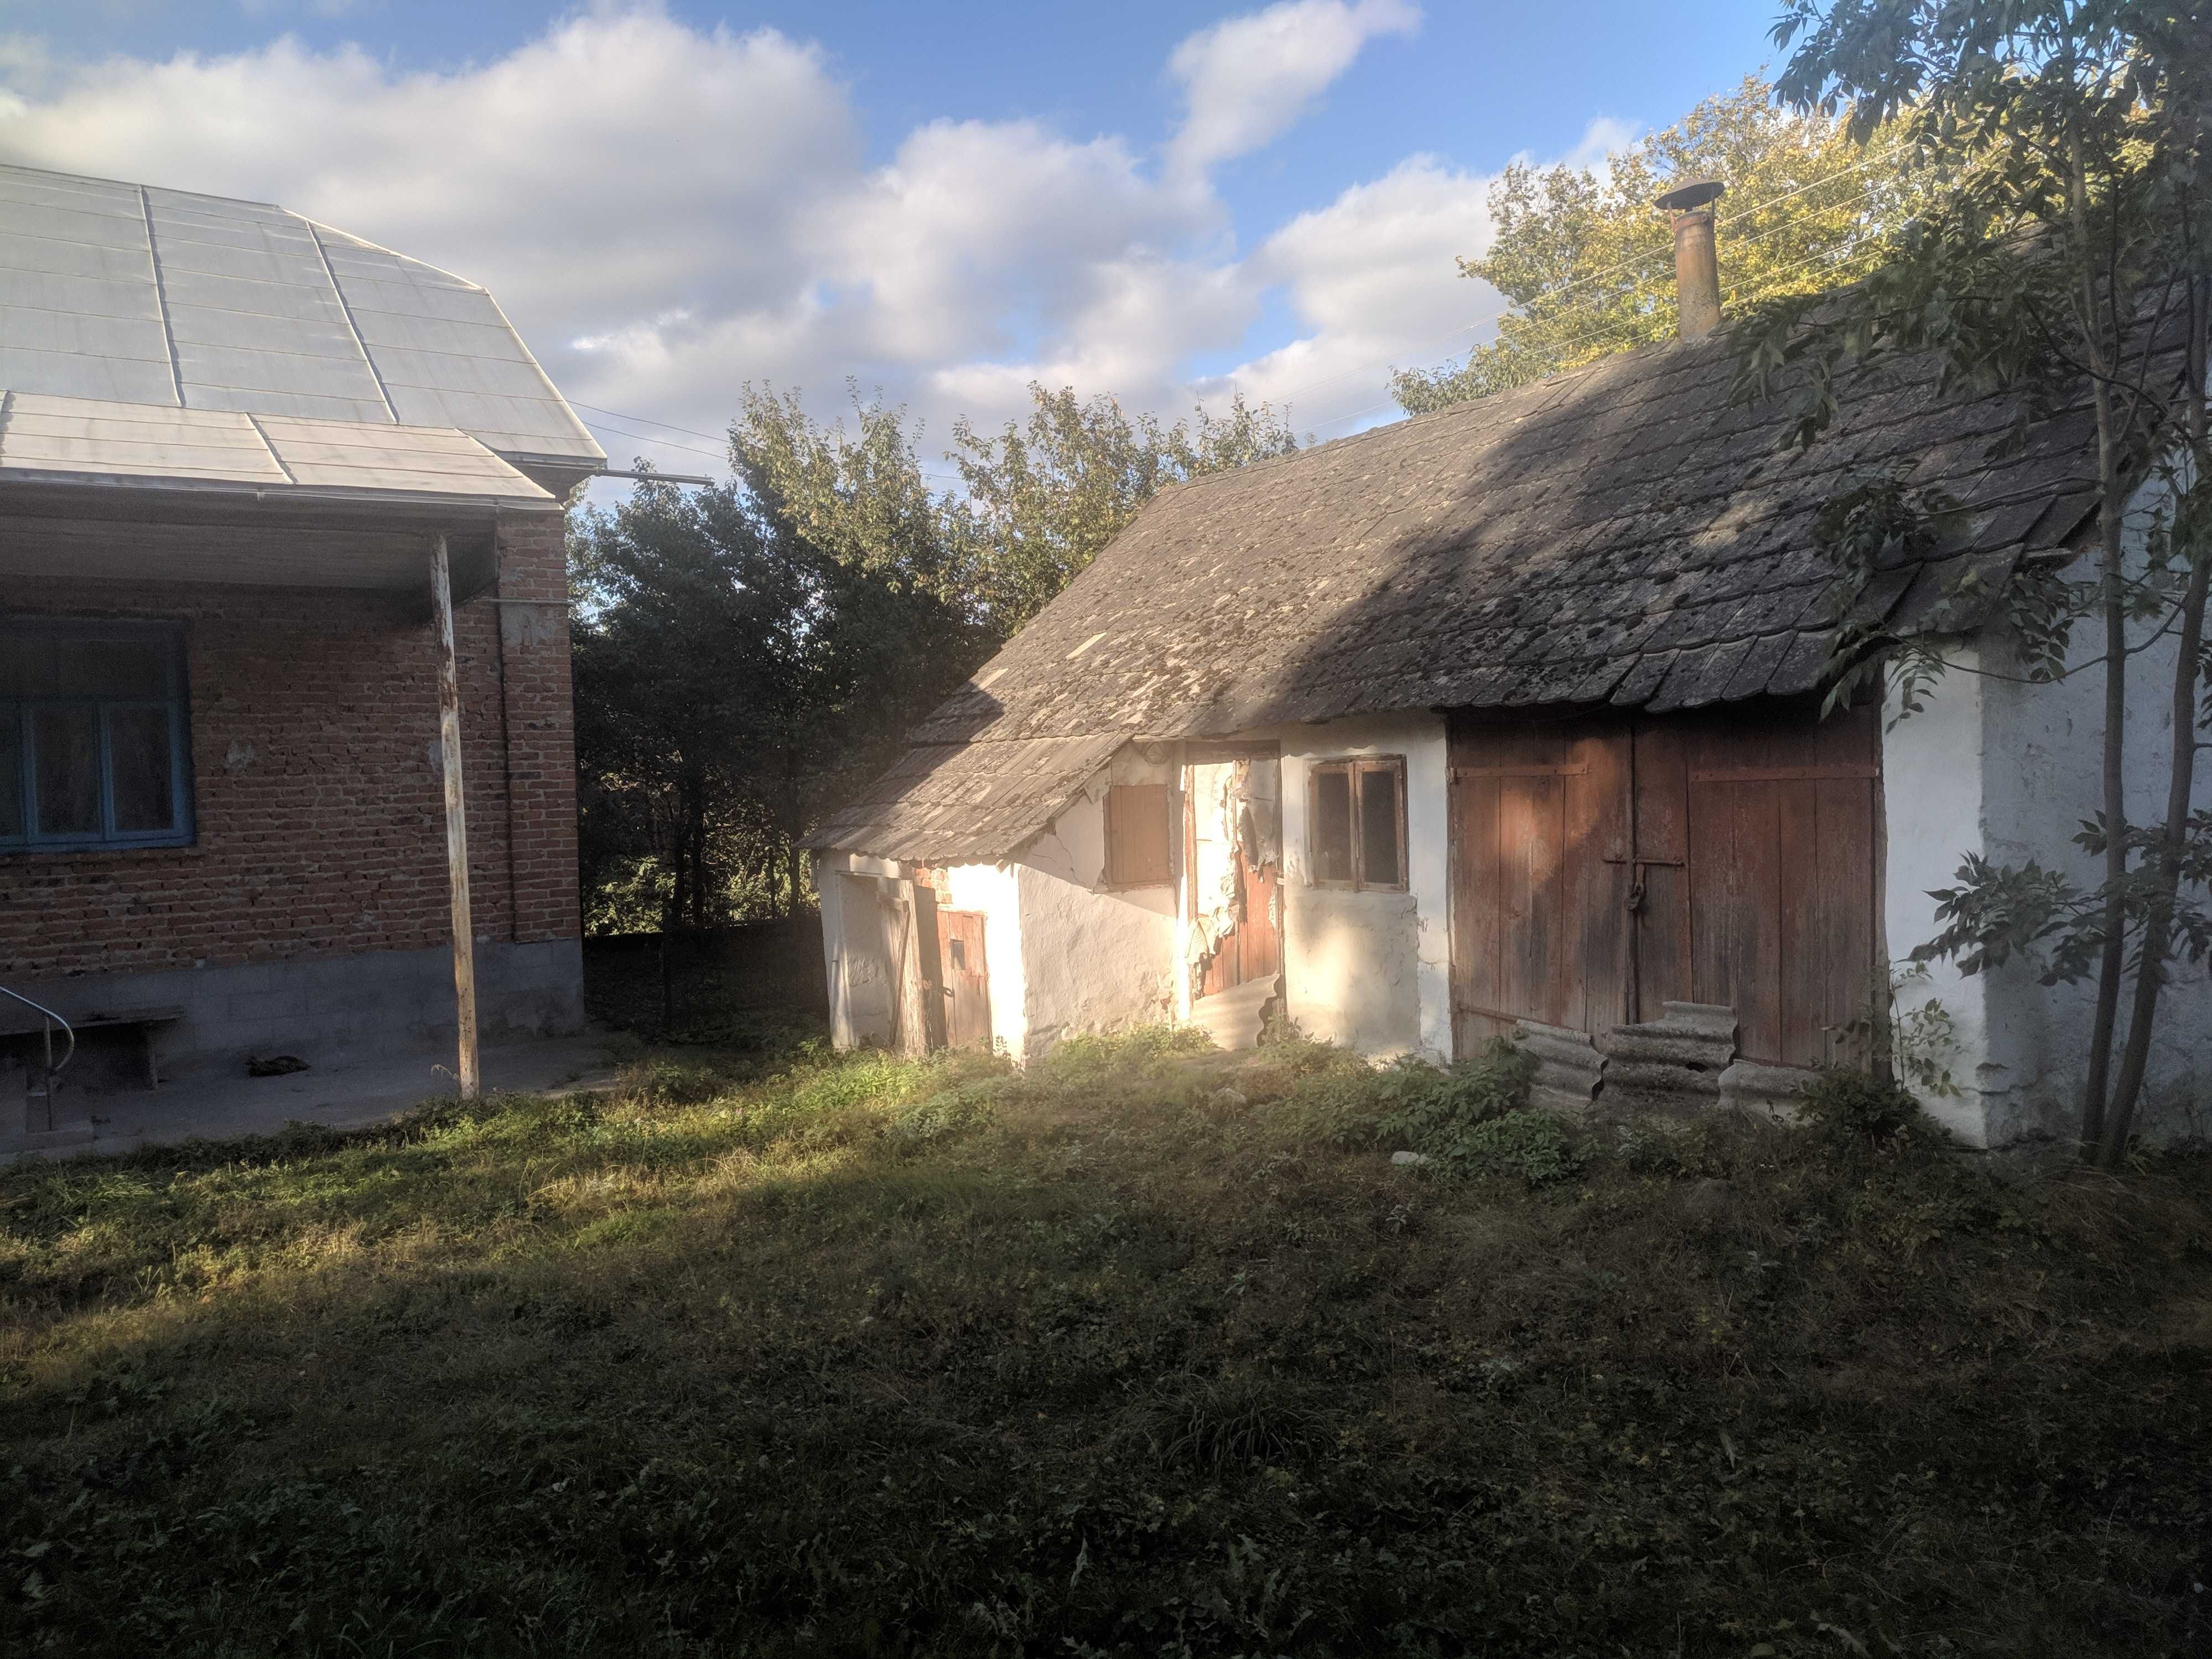 Будинок господарські споруди село дім Тернопільська обл Болязуби